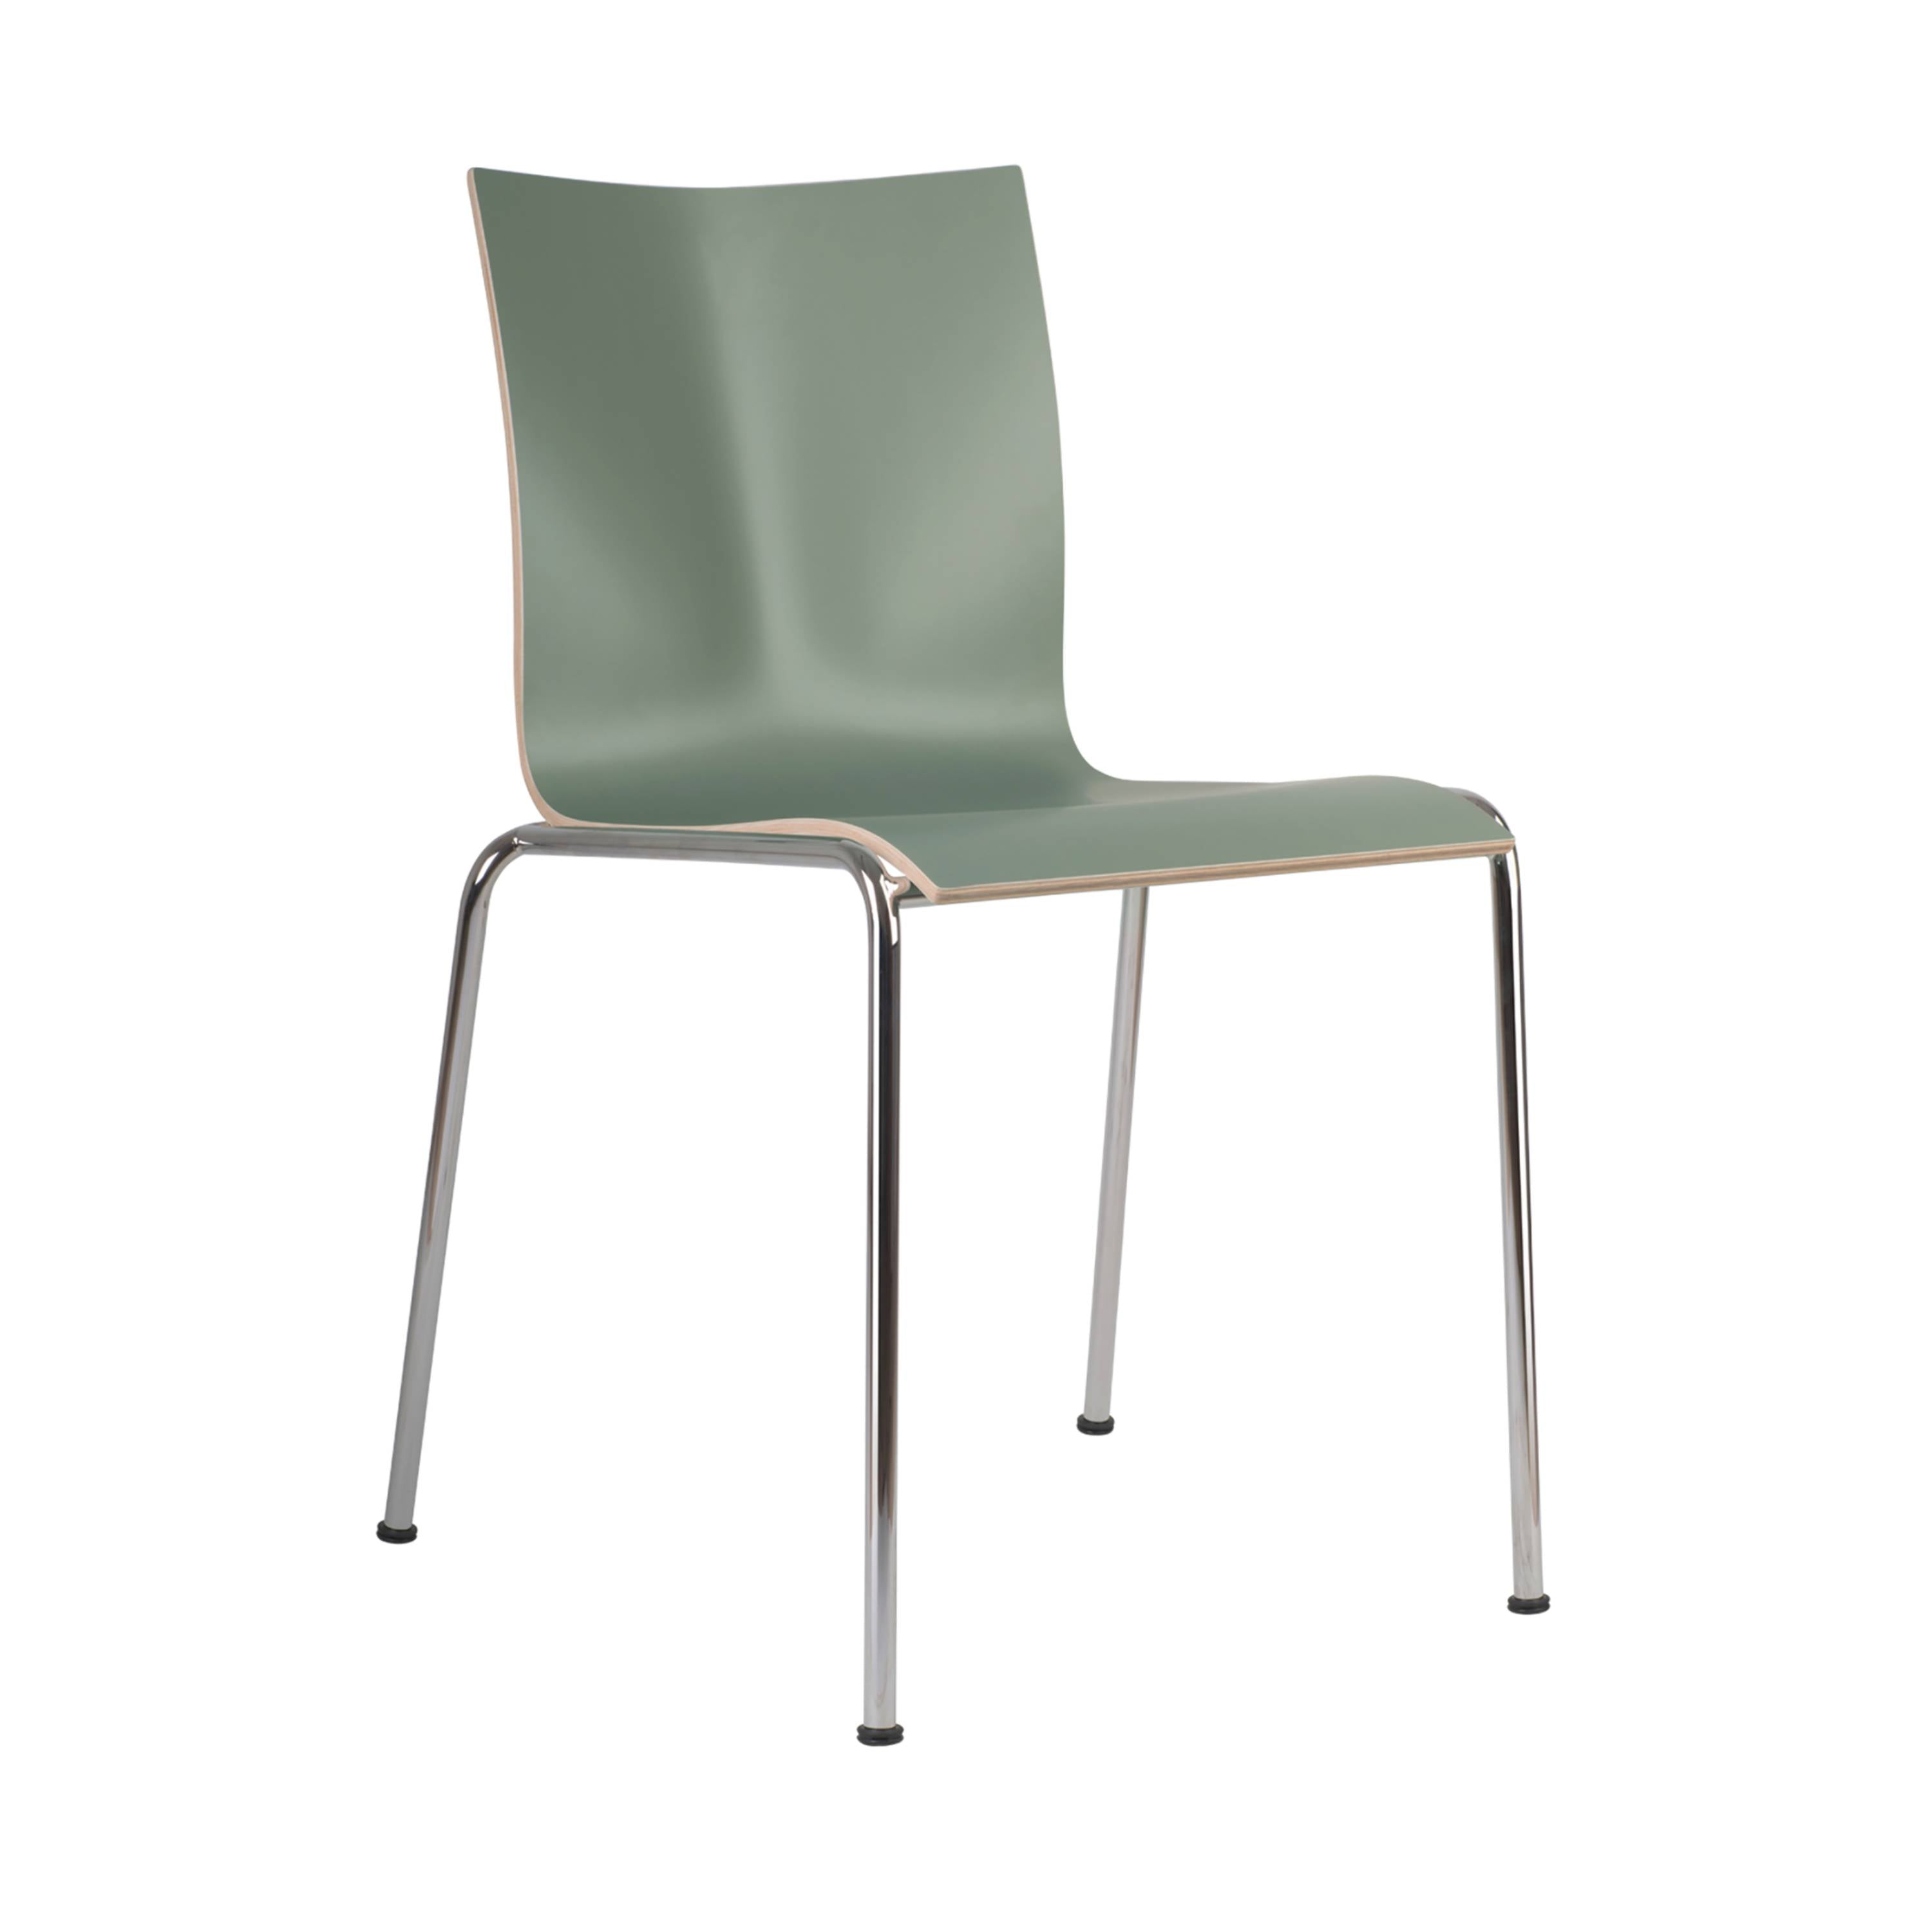 Chairik 101 Chair: Melamine + Cement Grey